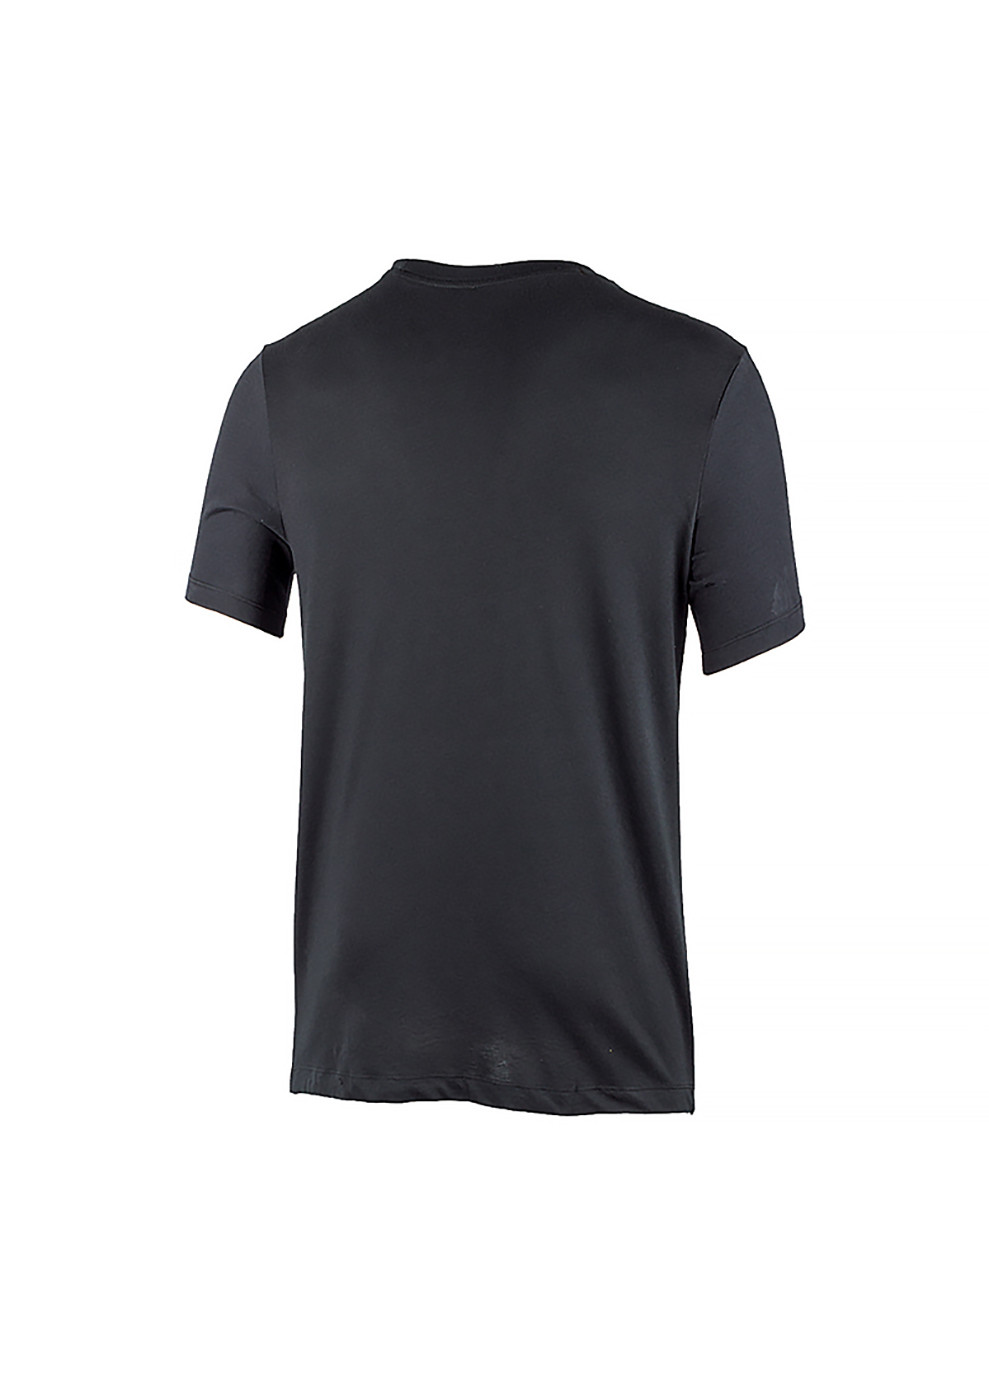 Черная мужская футболка m nk dry park20 ss tee черный s (cw6952-010 s) Nike